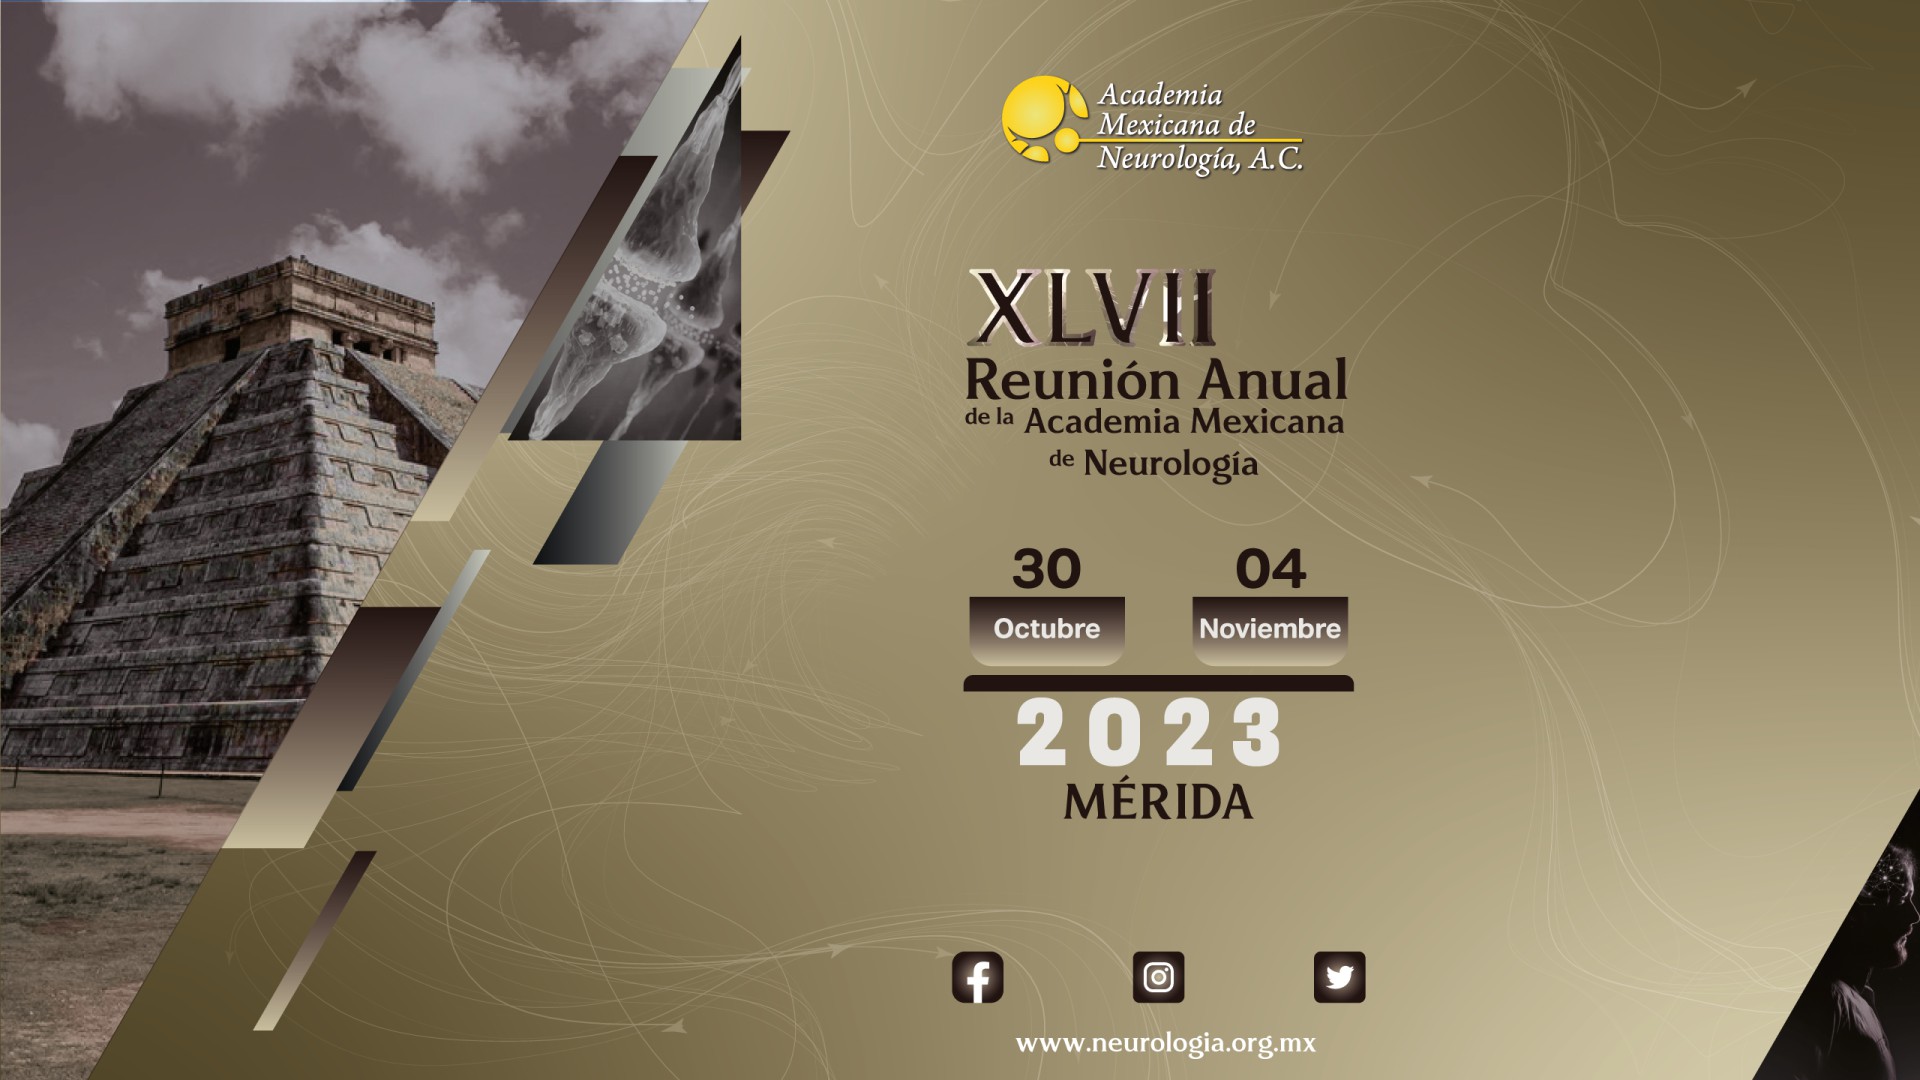 XLVII Reunión Anual de la Academia Mexicana de Neurología 2023